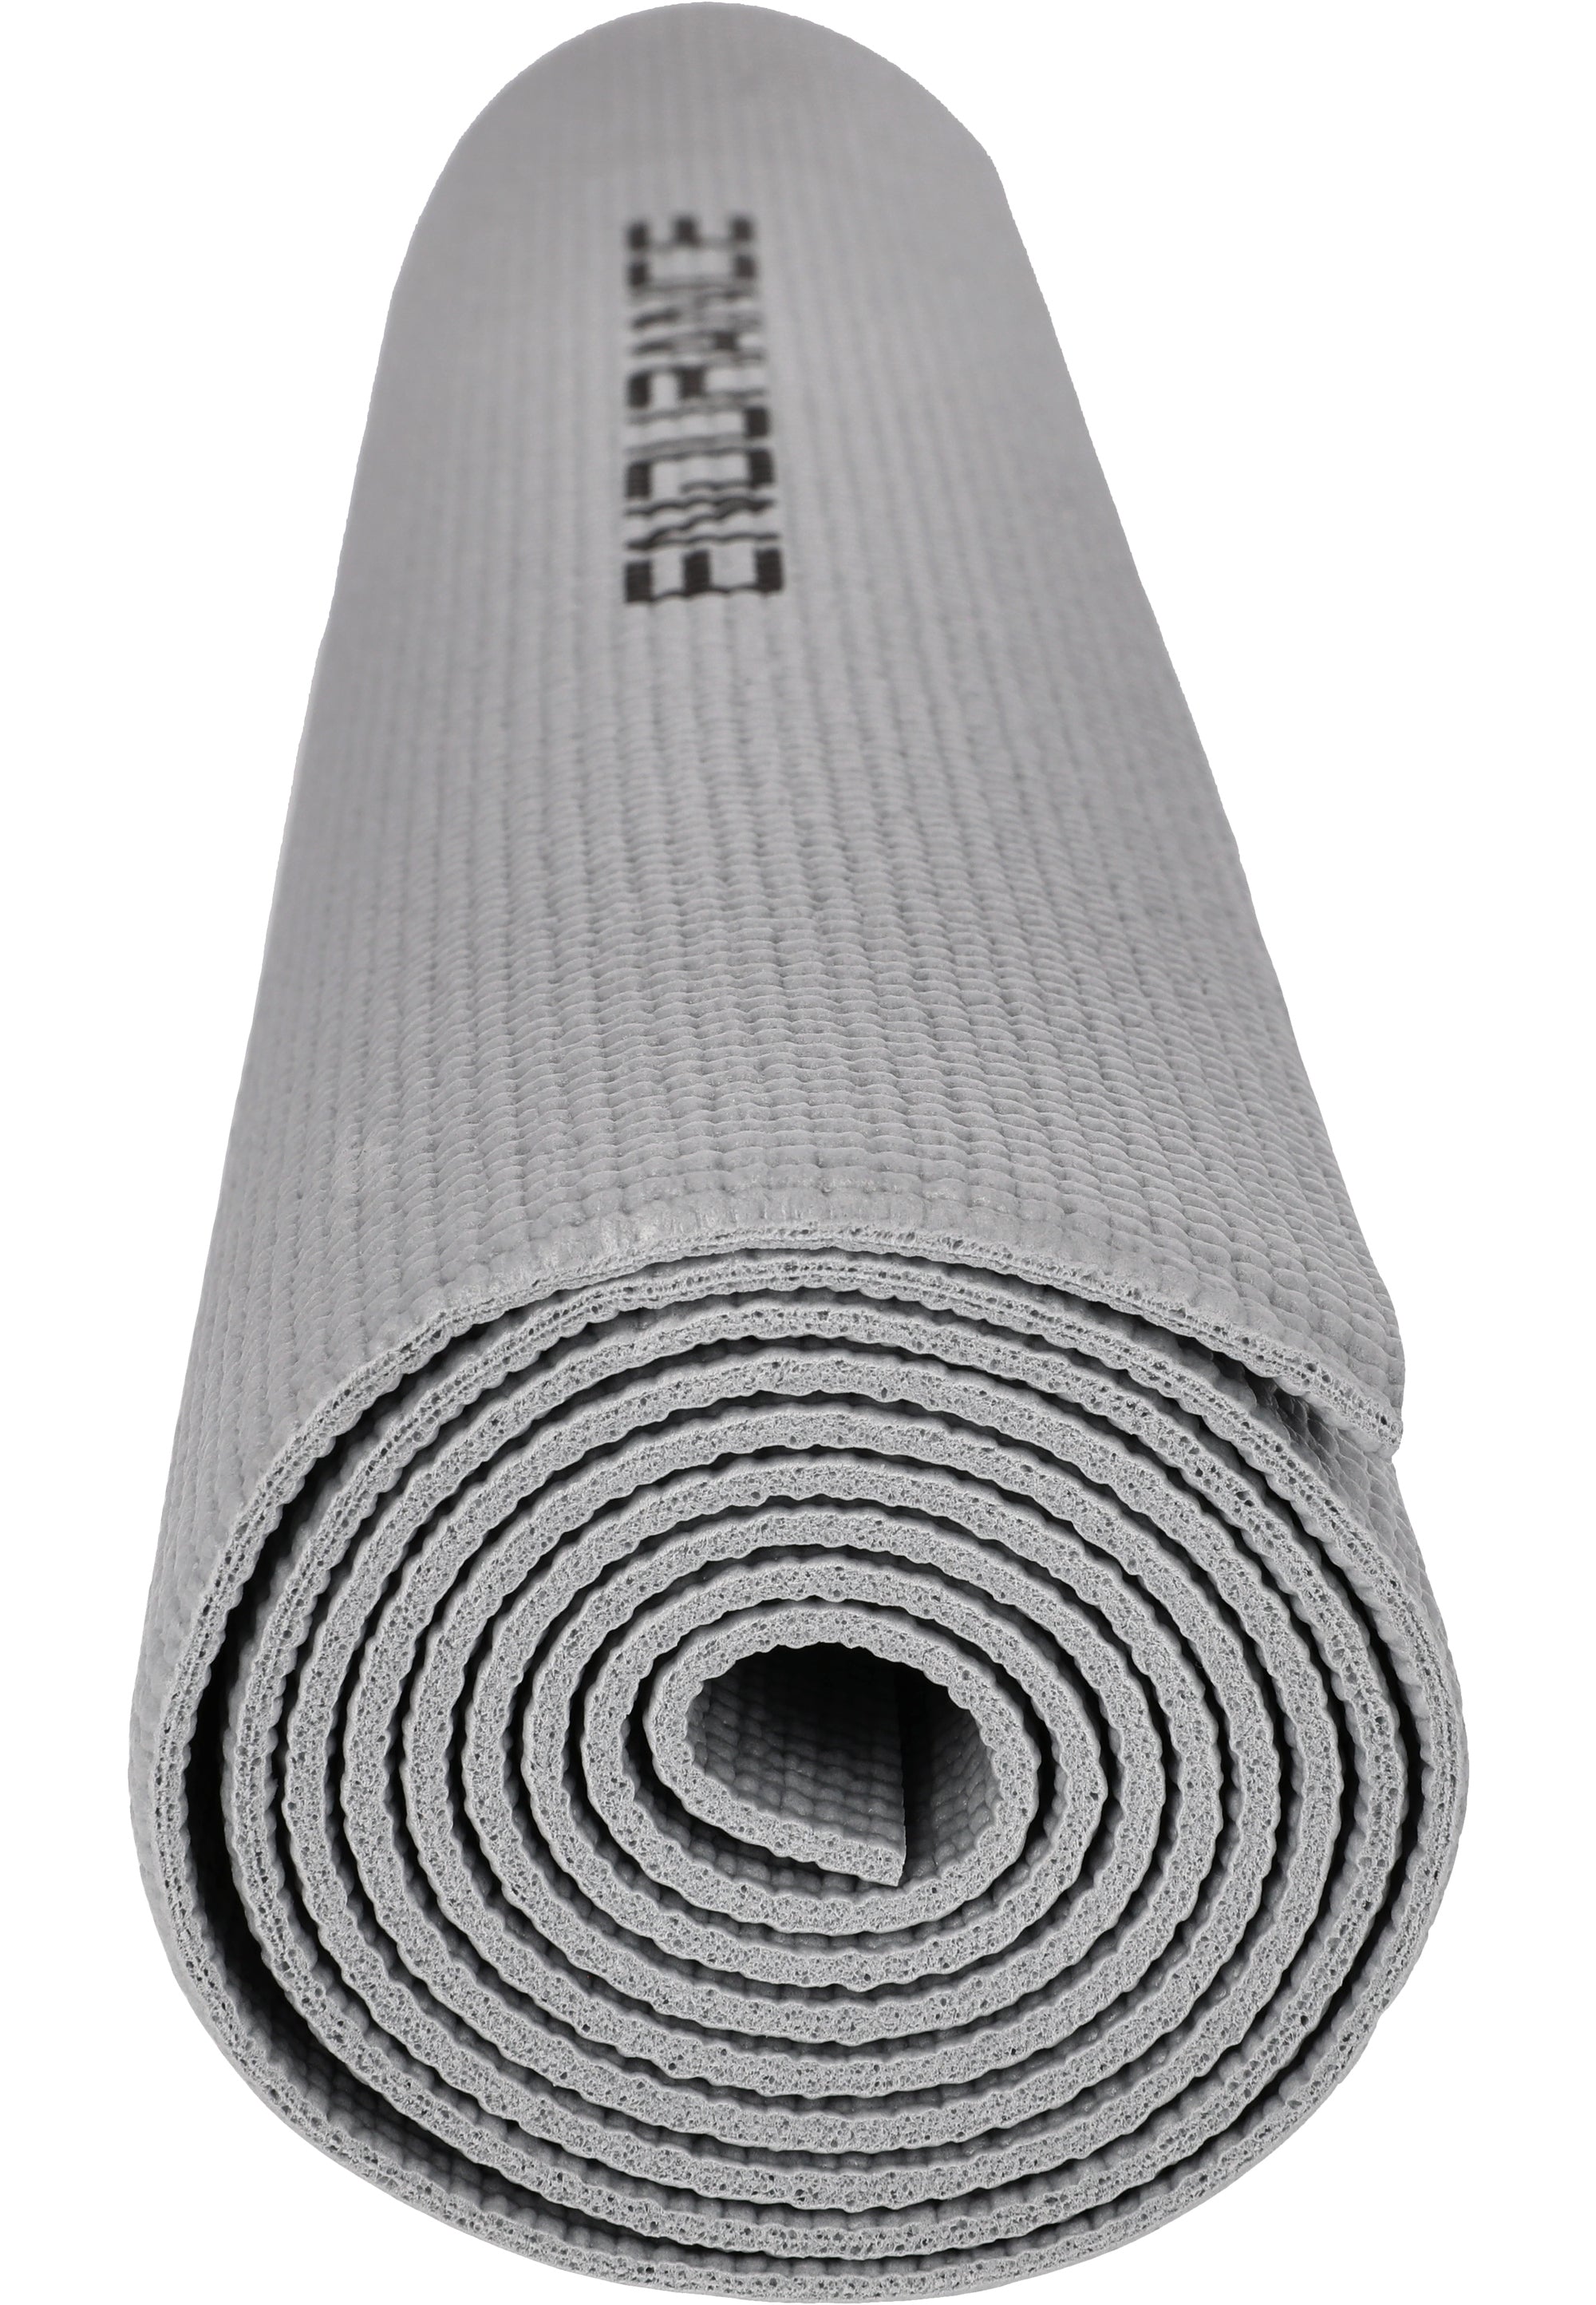 Endurance unisex Yoga - und Gymnastikmatte 173 cm x 61 cm Stärke  4 mm E97501